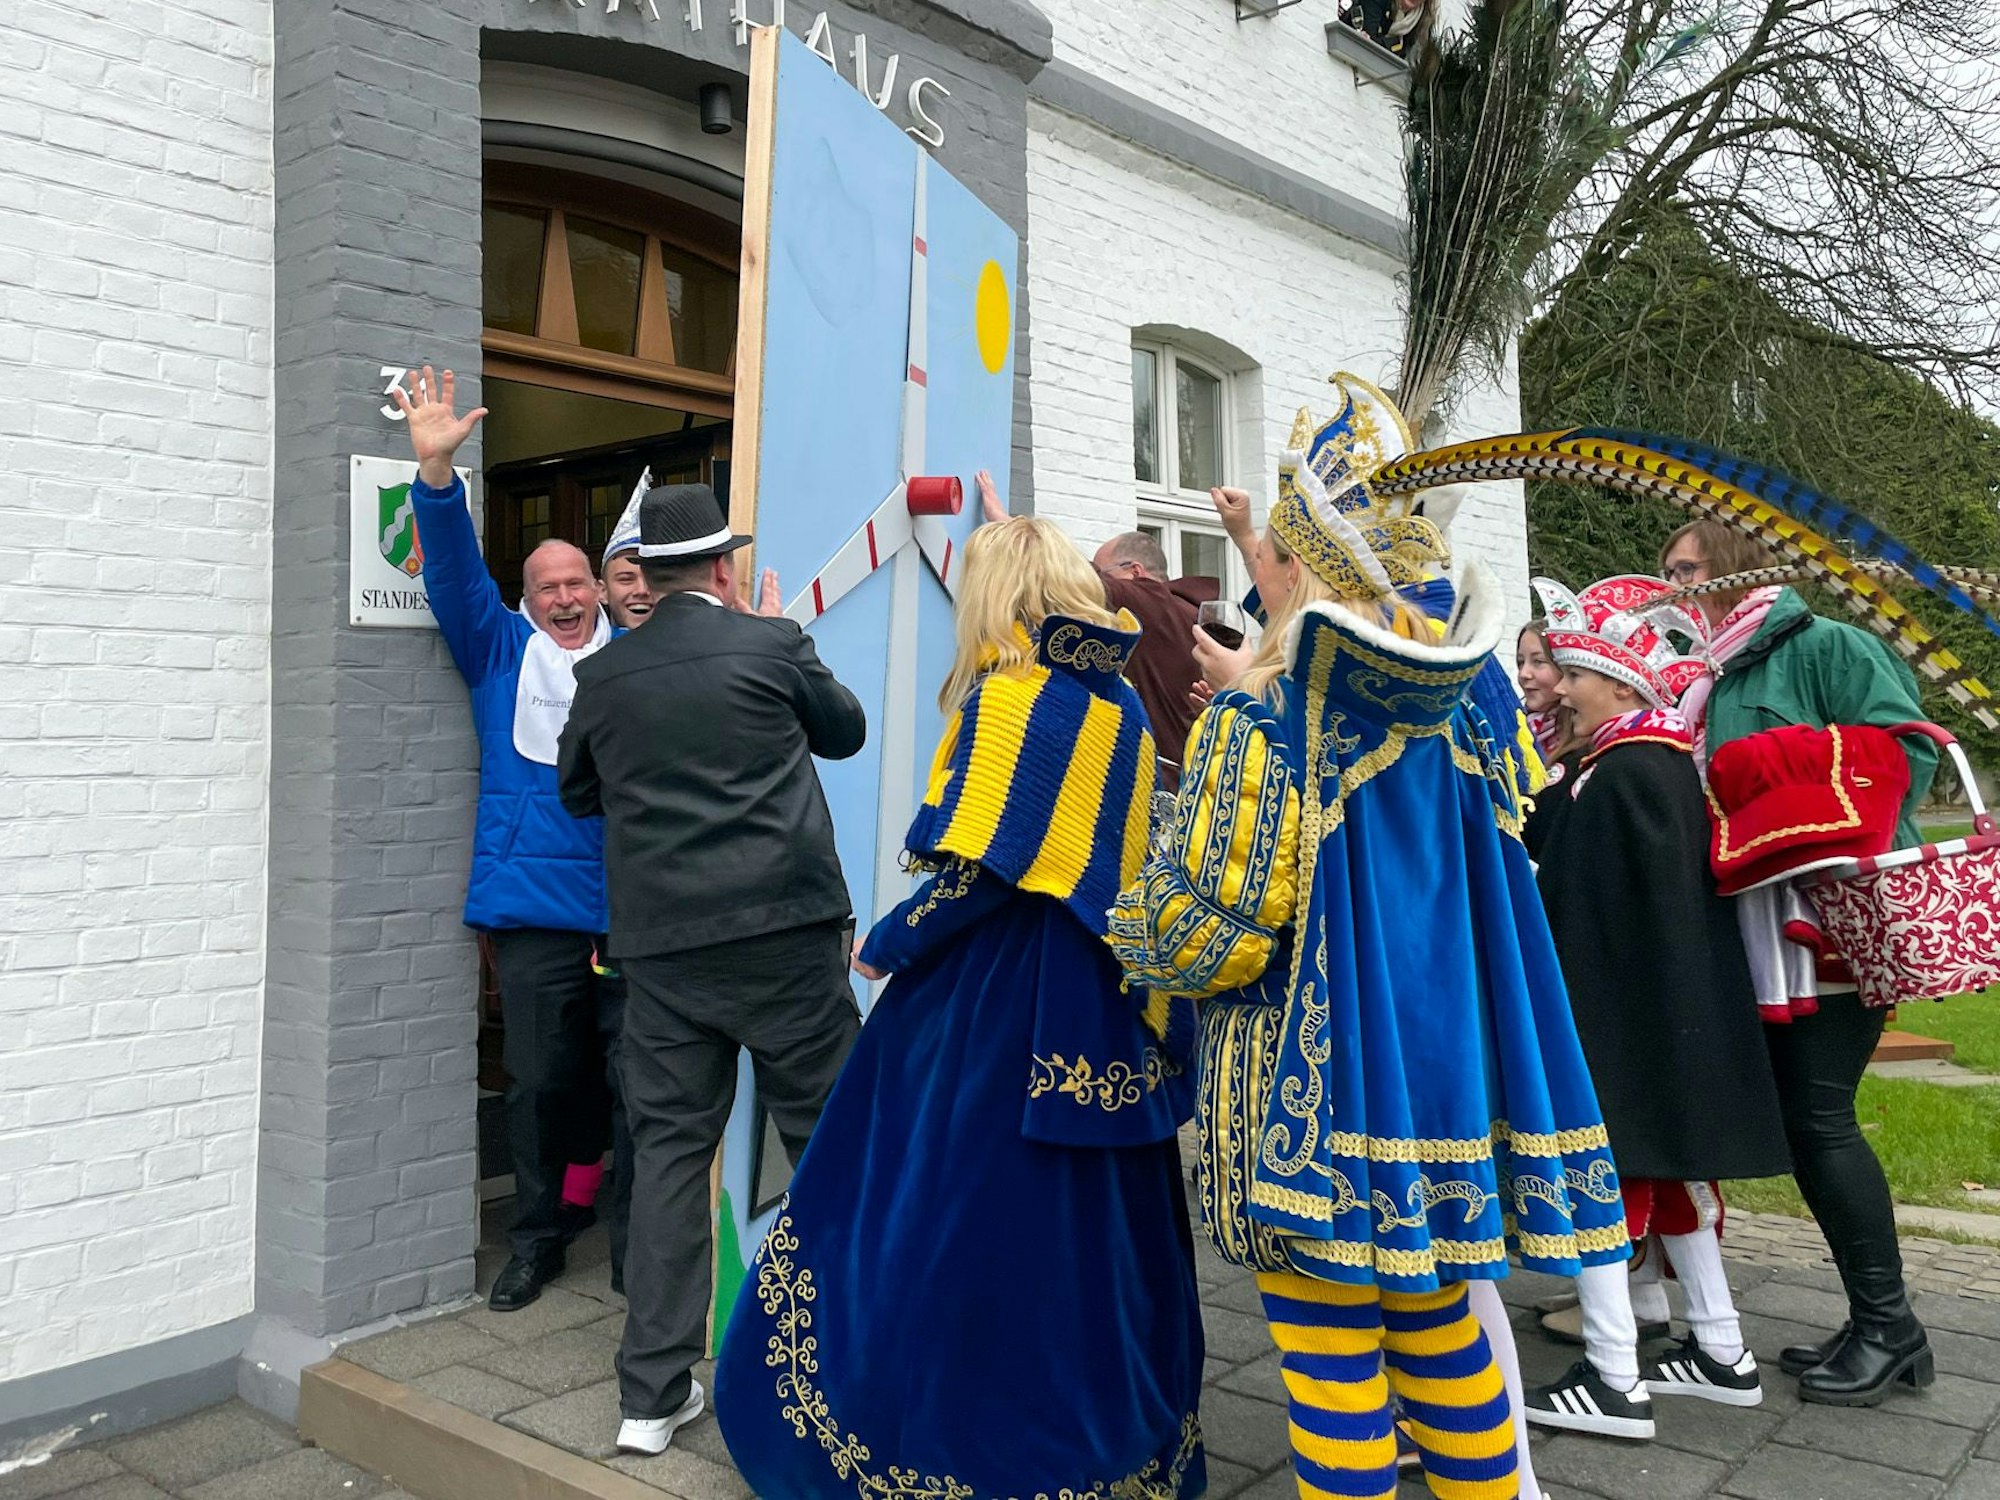 Karnevalisten hieven die Holzbarrikade an der Rathaustür beseite.